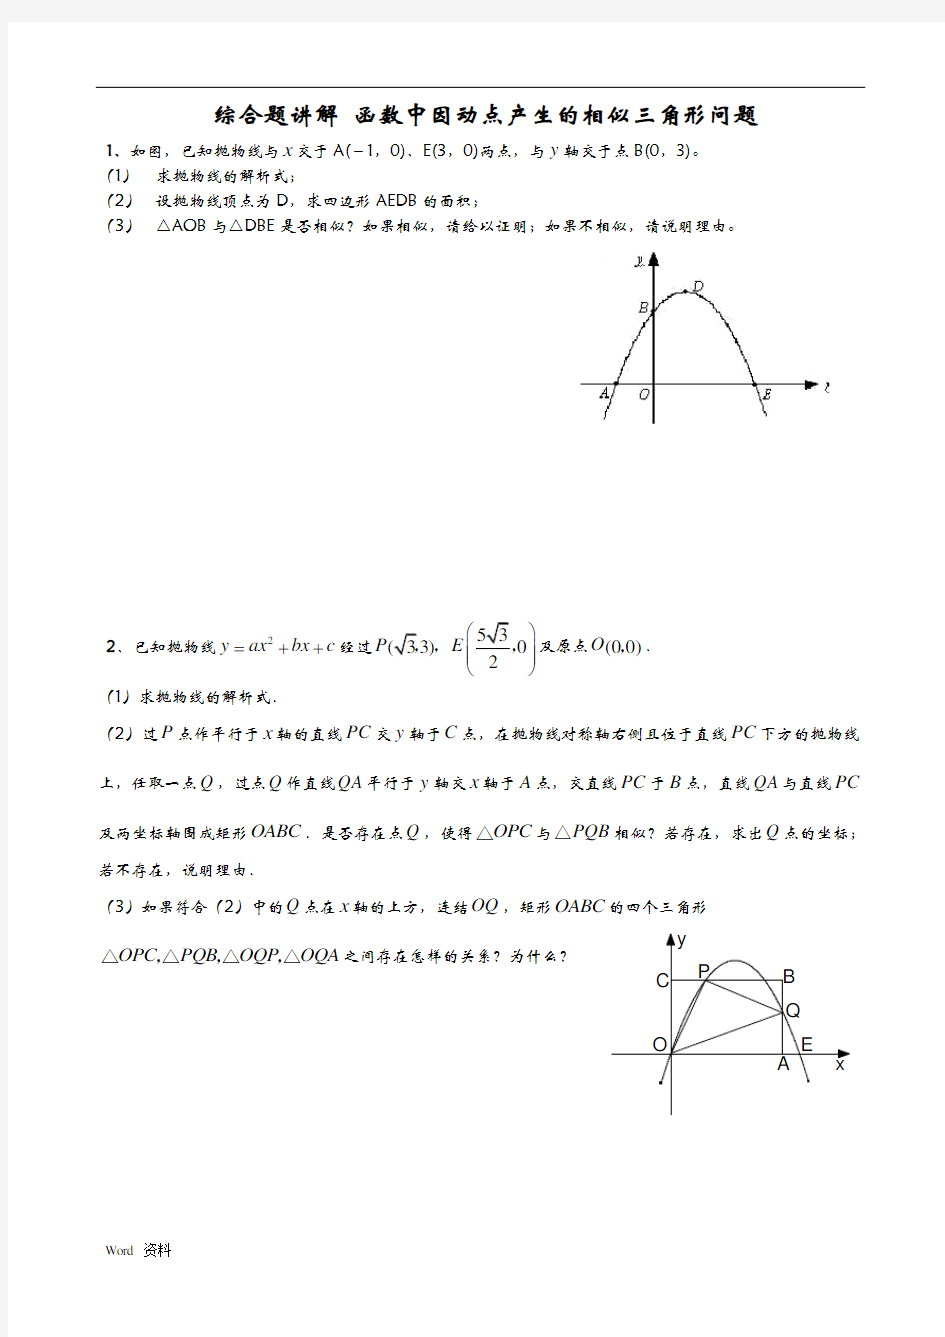 二次函数与相似三角形问题(含答案)